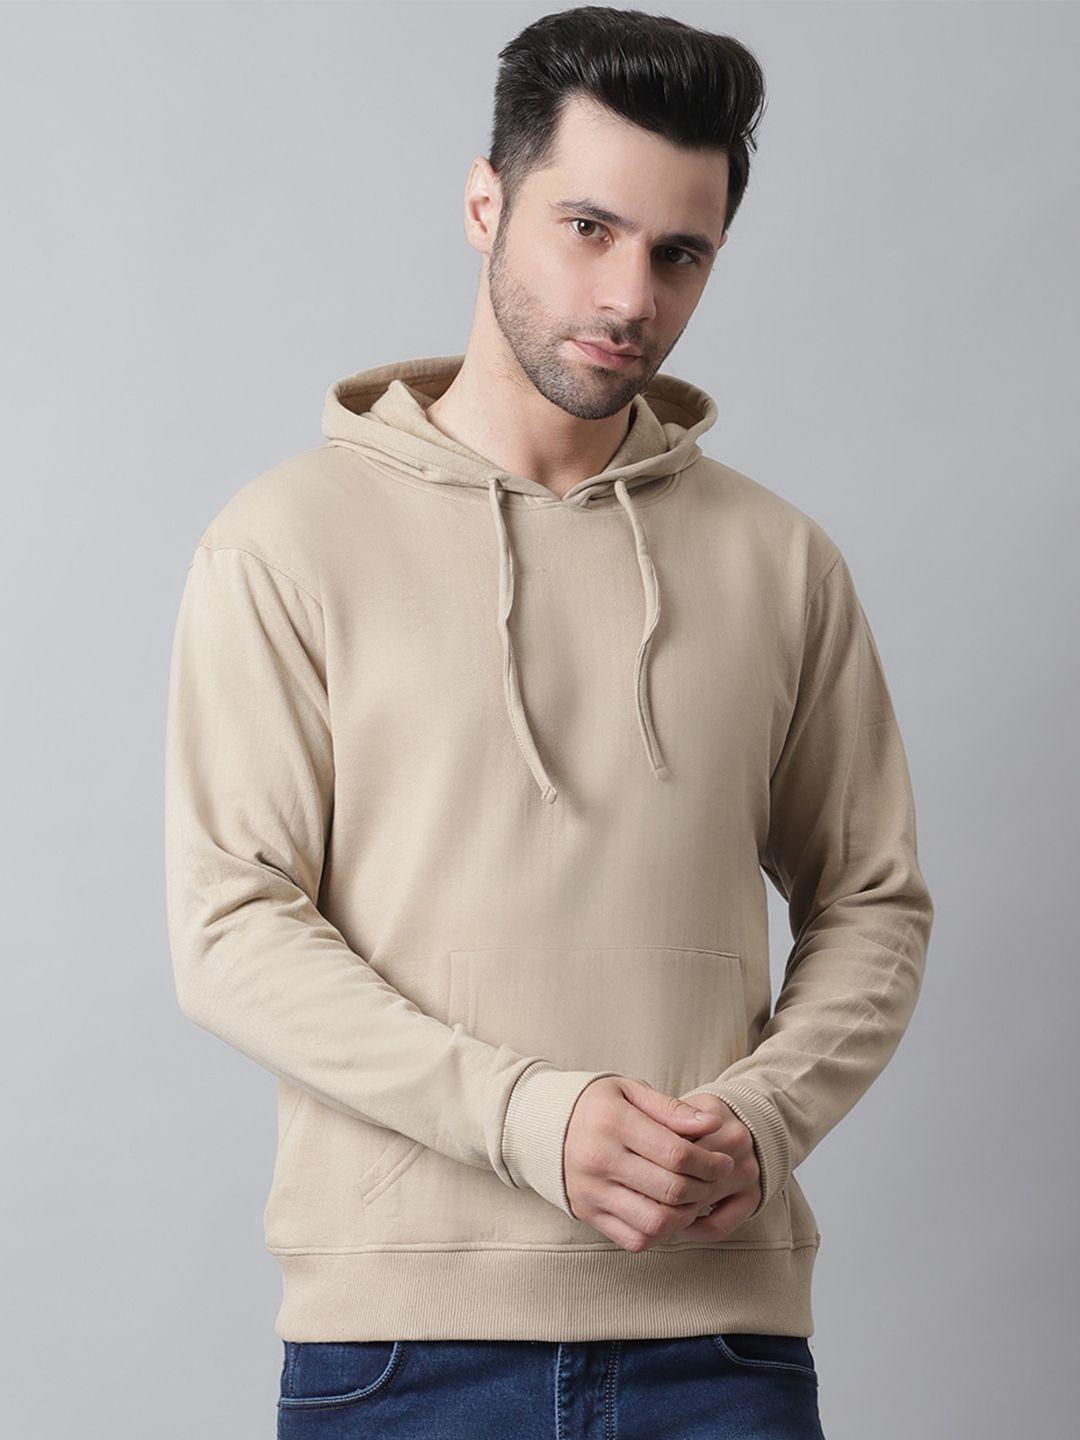 style-quotient-men-cotton-hooded-sweatshirt